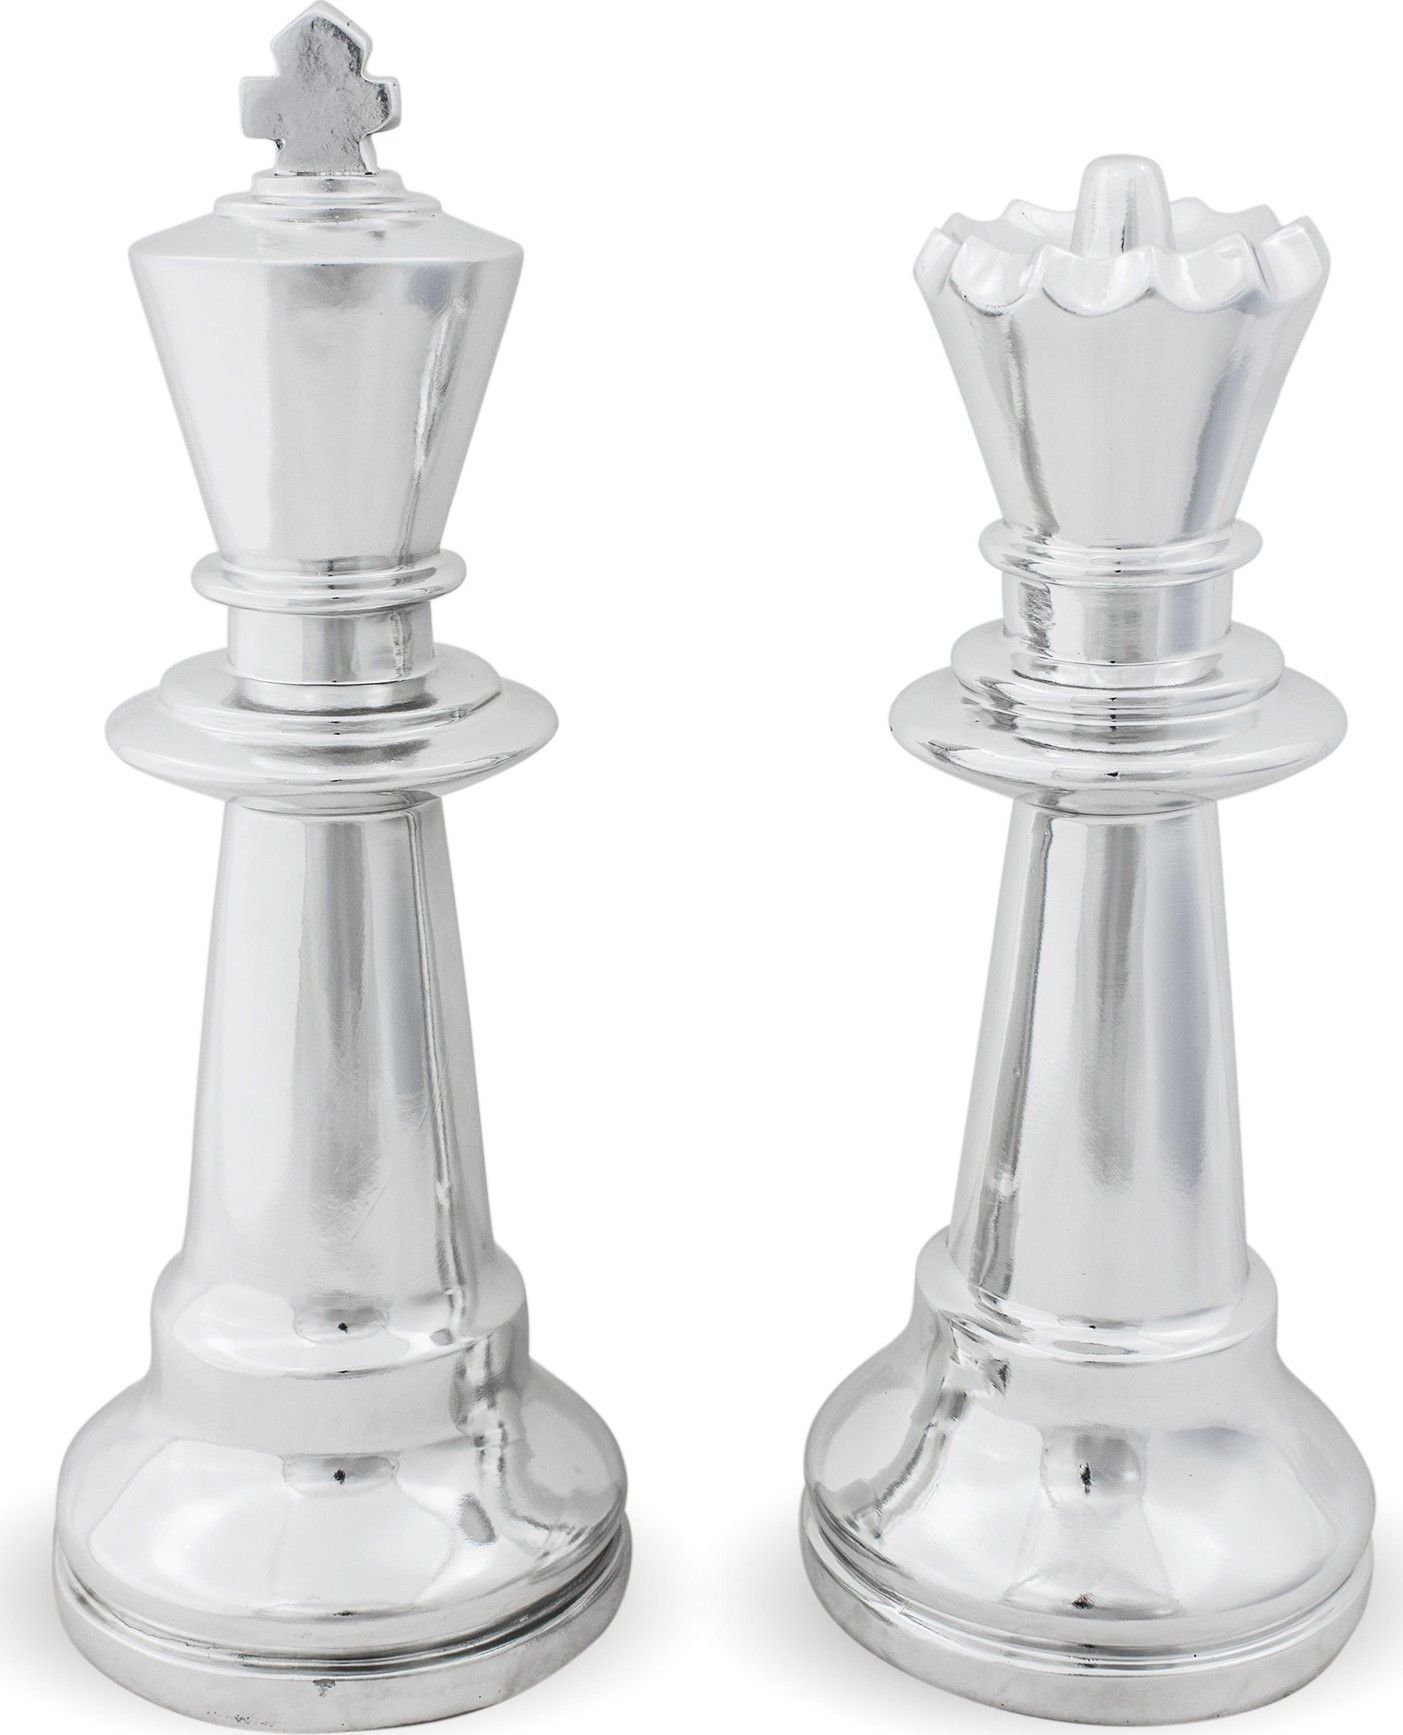 Sada stříbrných šachových figurek 114723 - M DUM.cz